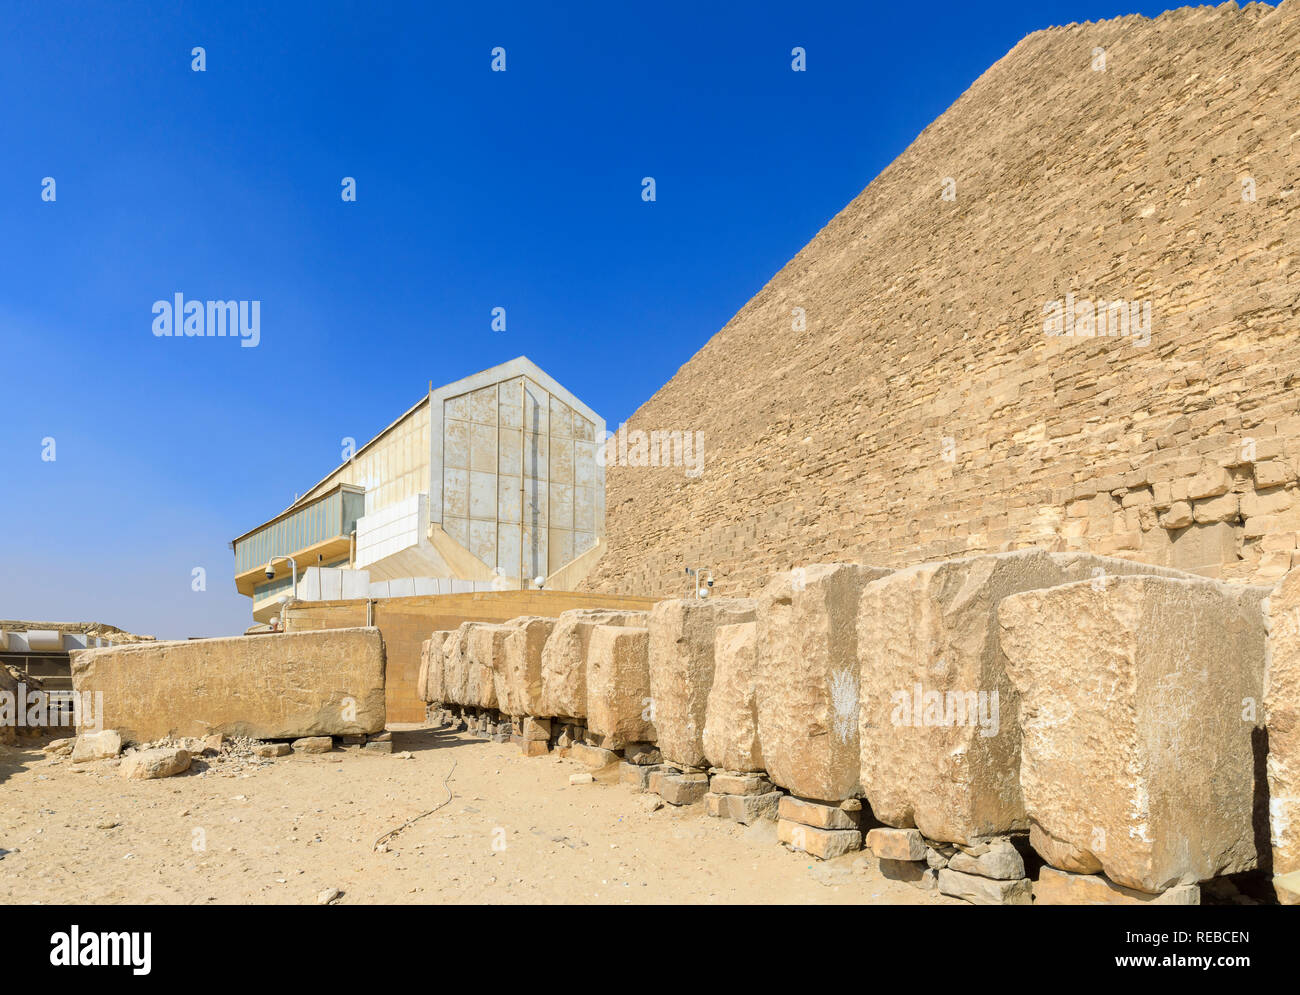 Extérieur de la Musée de bateau solaire (Khufu) Musée du bateau à côté de la grande pyramide de Chéops, le plateau de Gizeh, Le Caire, Egypte Banque D'Images